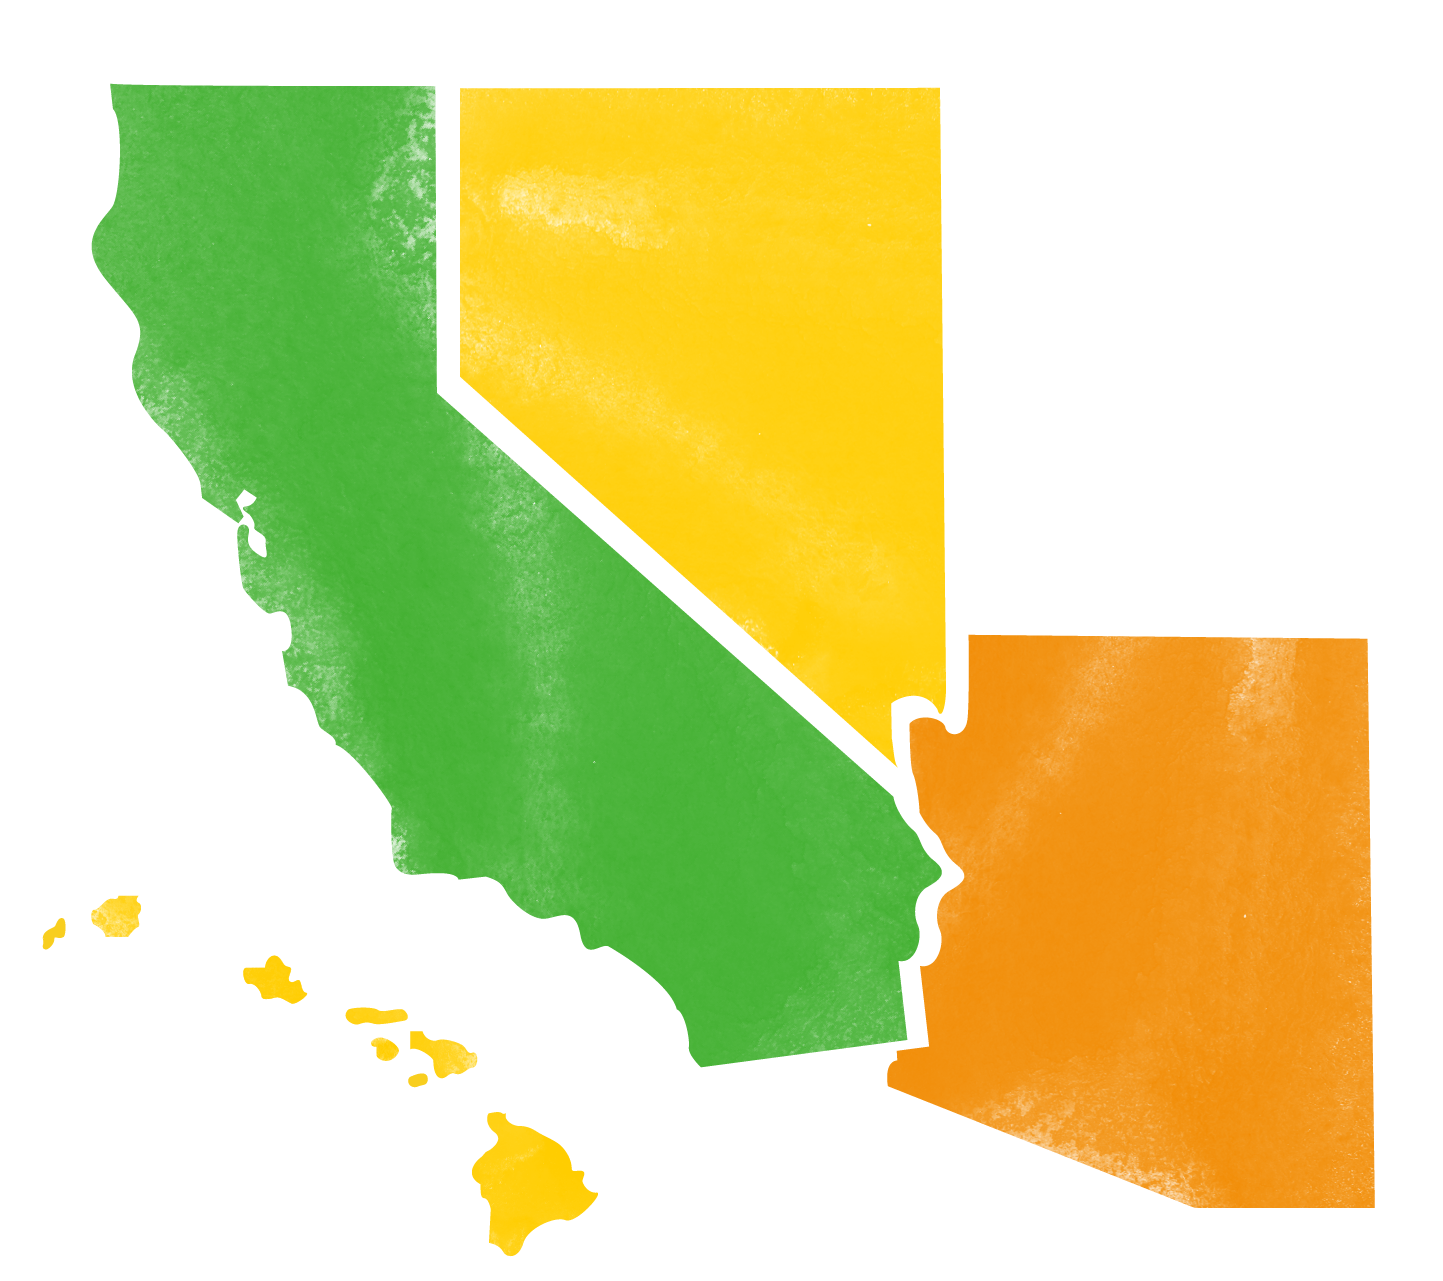 States in the western region: CA, AZ, HI, NV